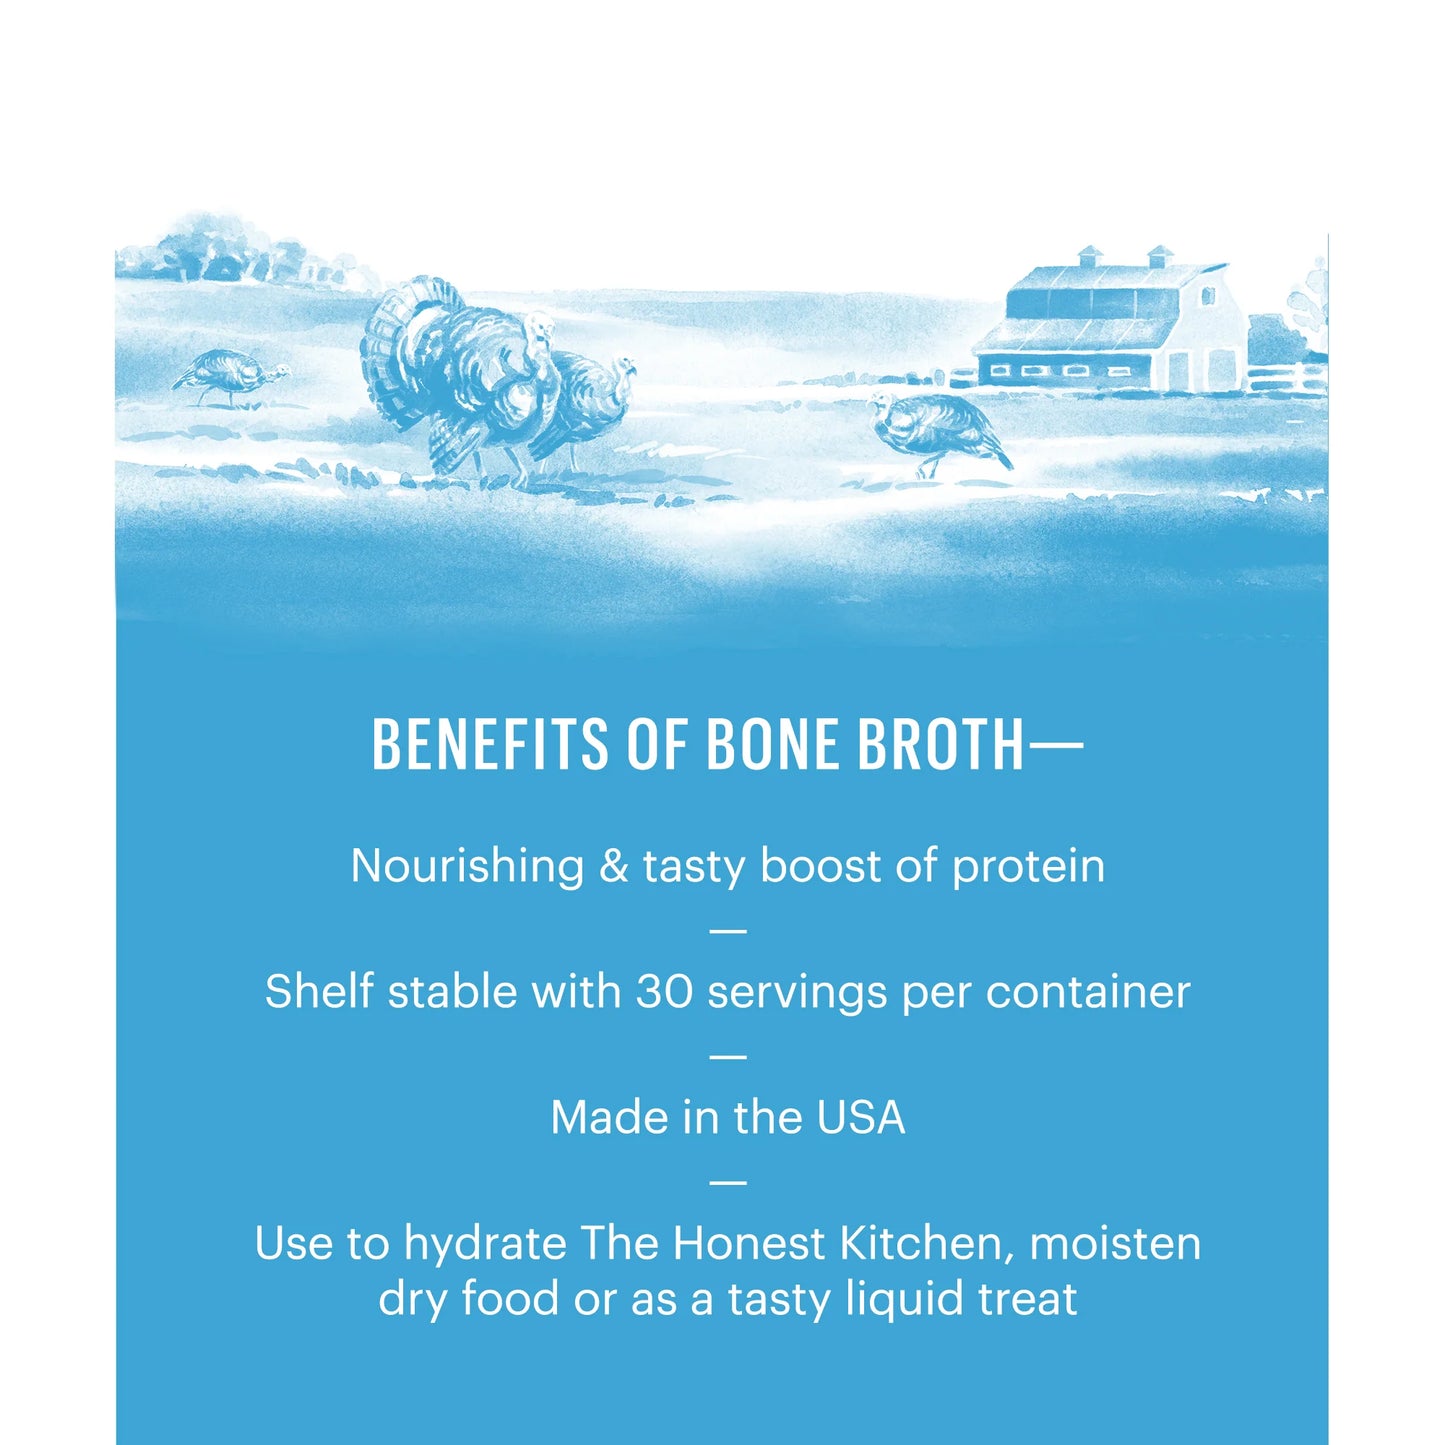 Daily Booster Turkey Bone Broth -3.6oz